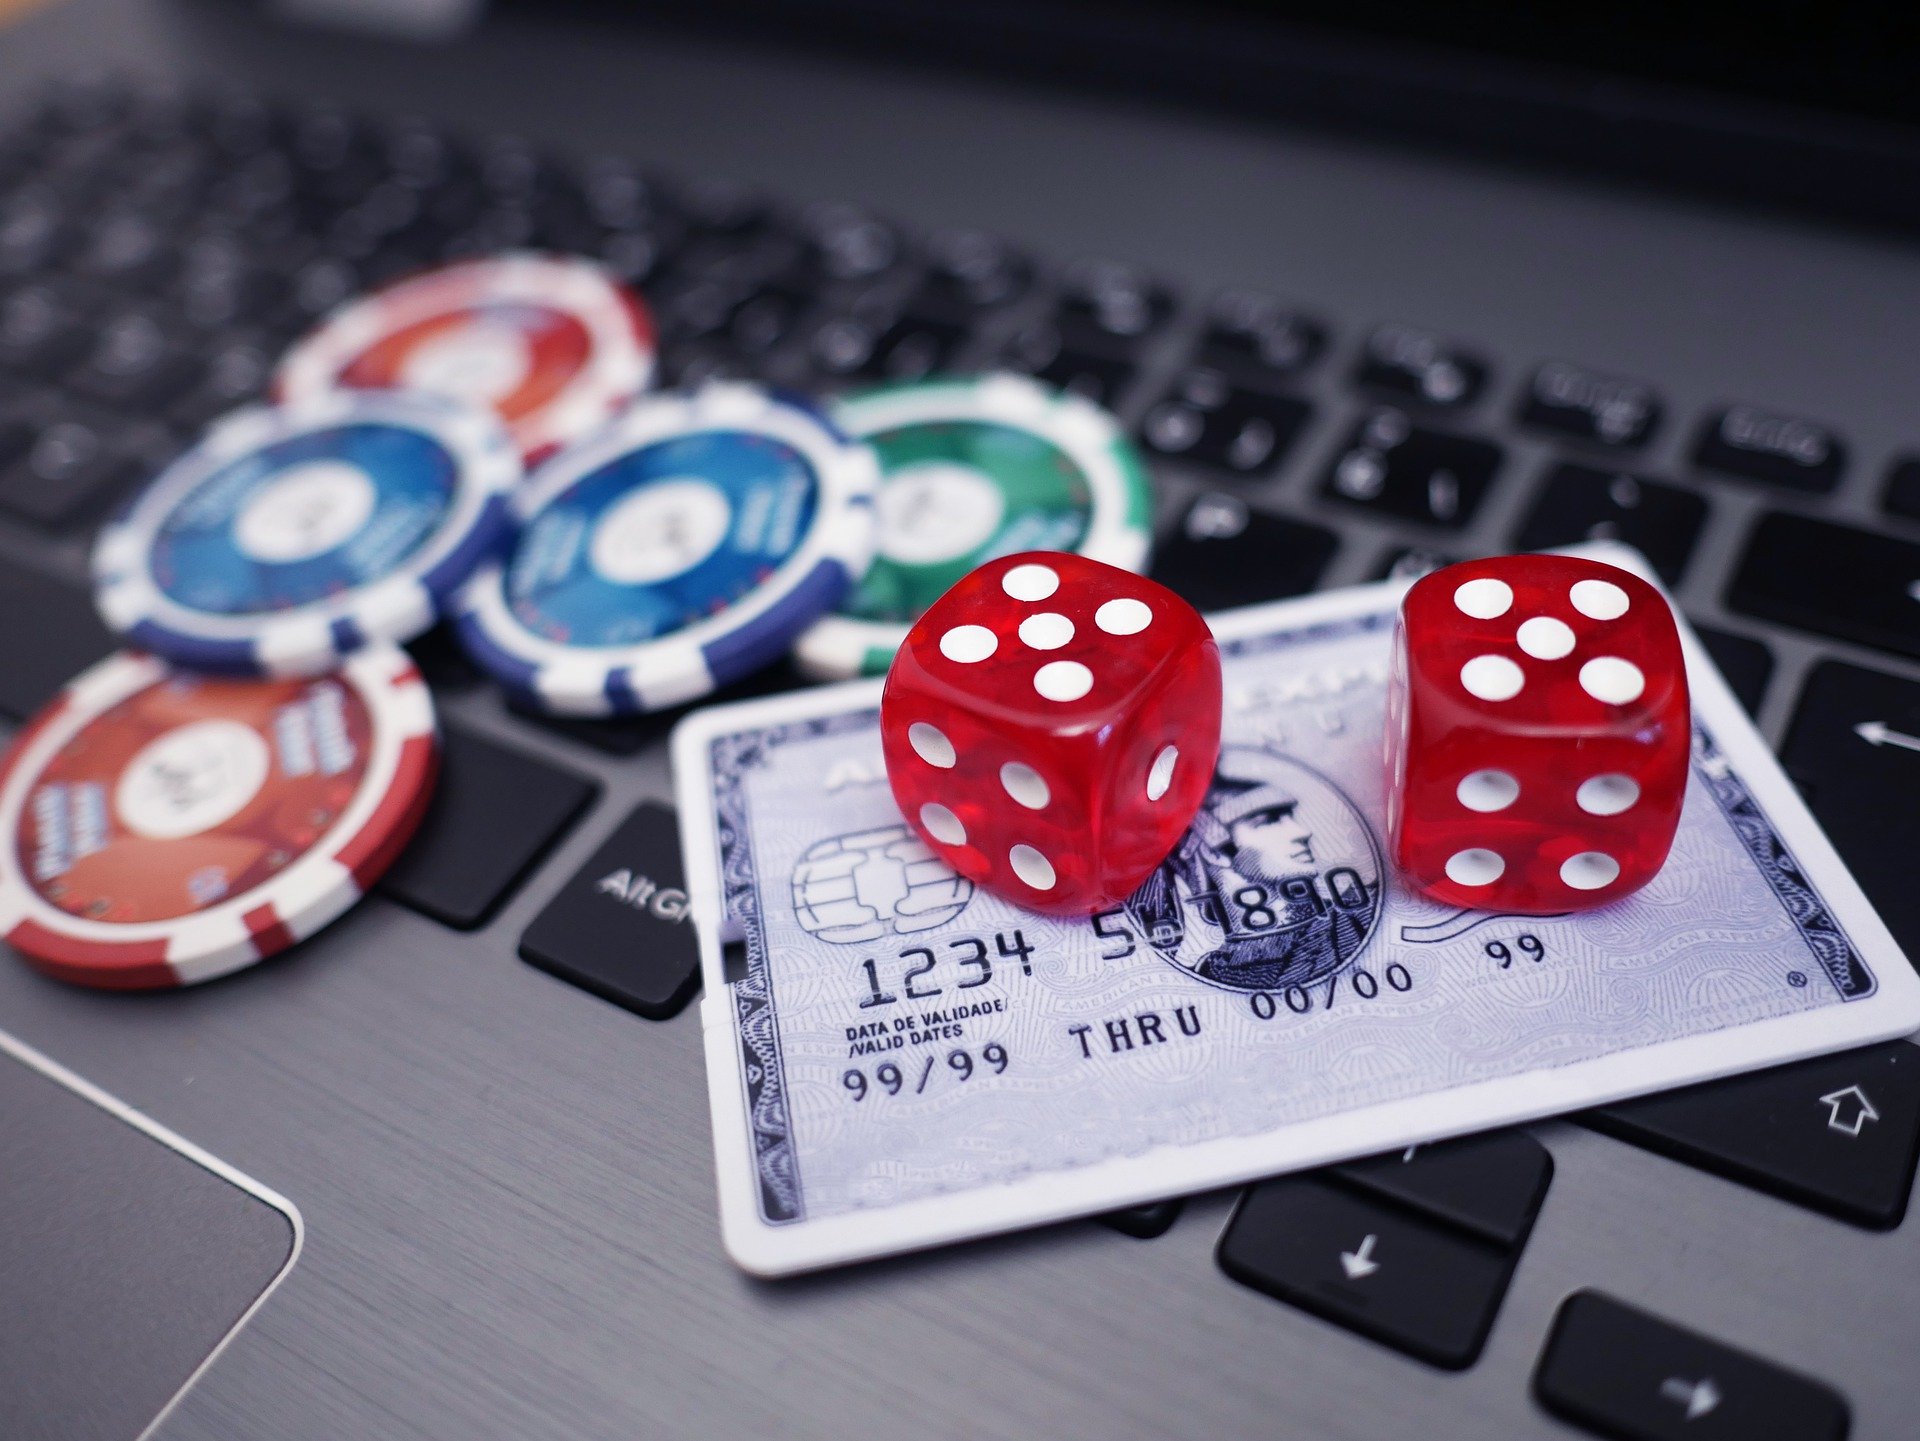 Comment obtenir un casino fabuleux avec un budget serré